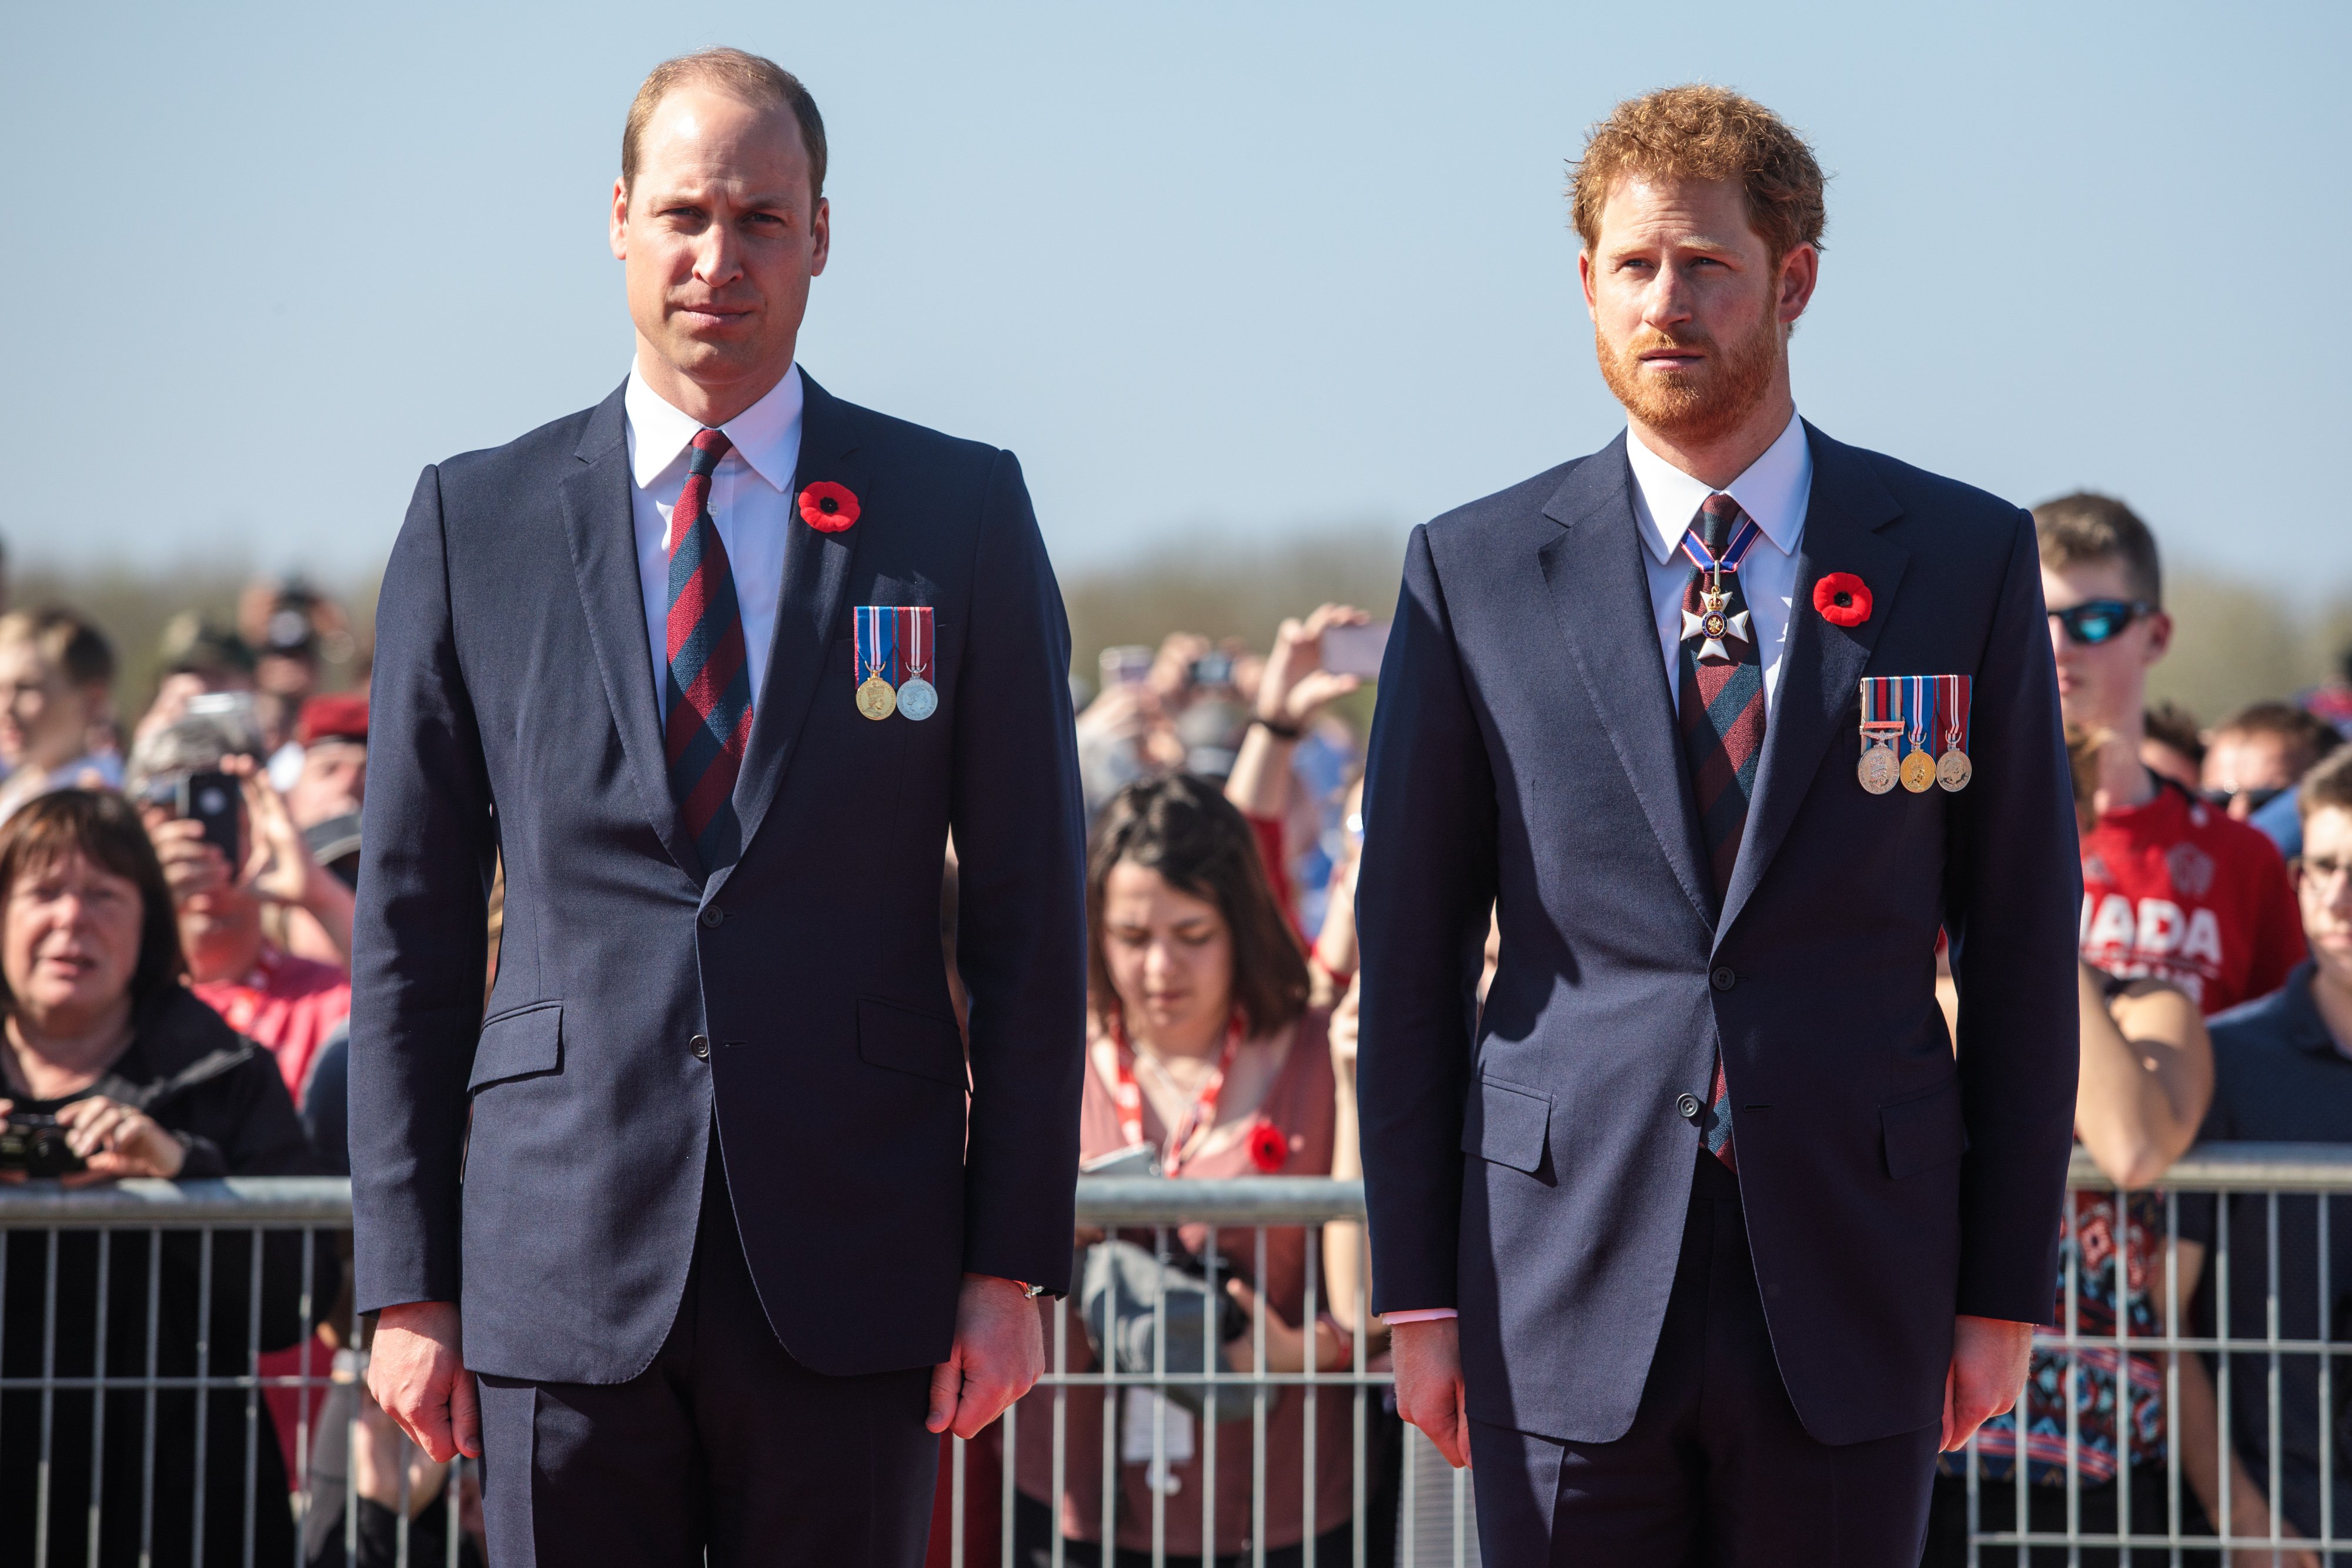 El príncipe William y el príncipe Harry llegan al monumento nacional canadiense de Vimy el 9 de abril de 2017 en Vimy, Francia. | Foto: Getty Images